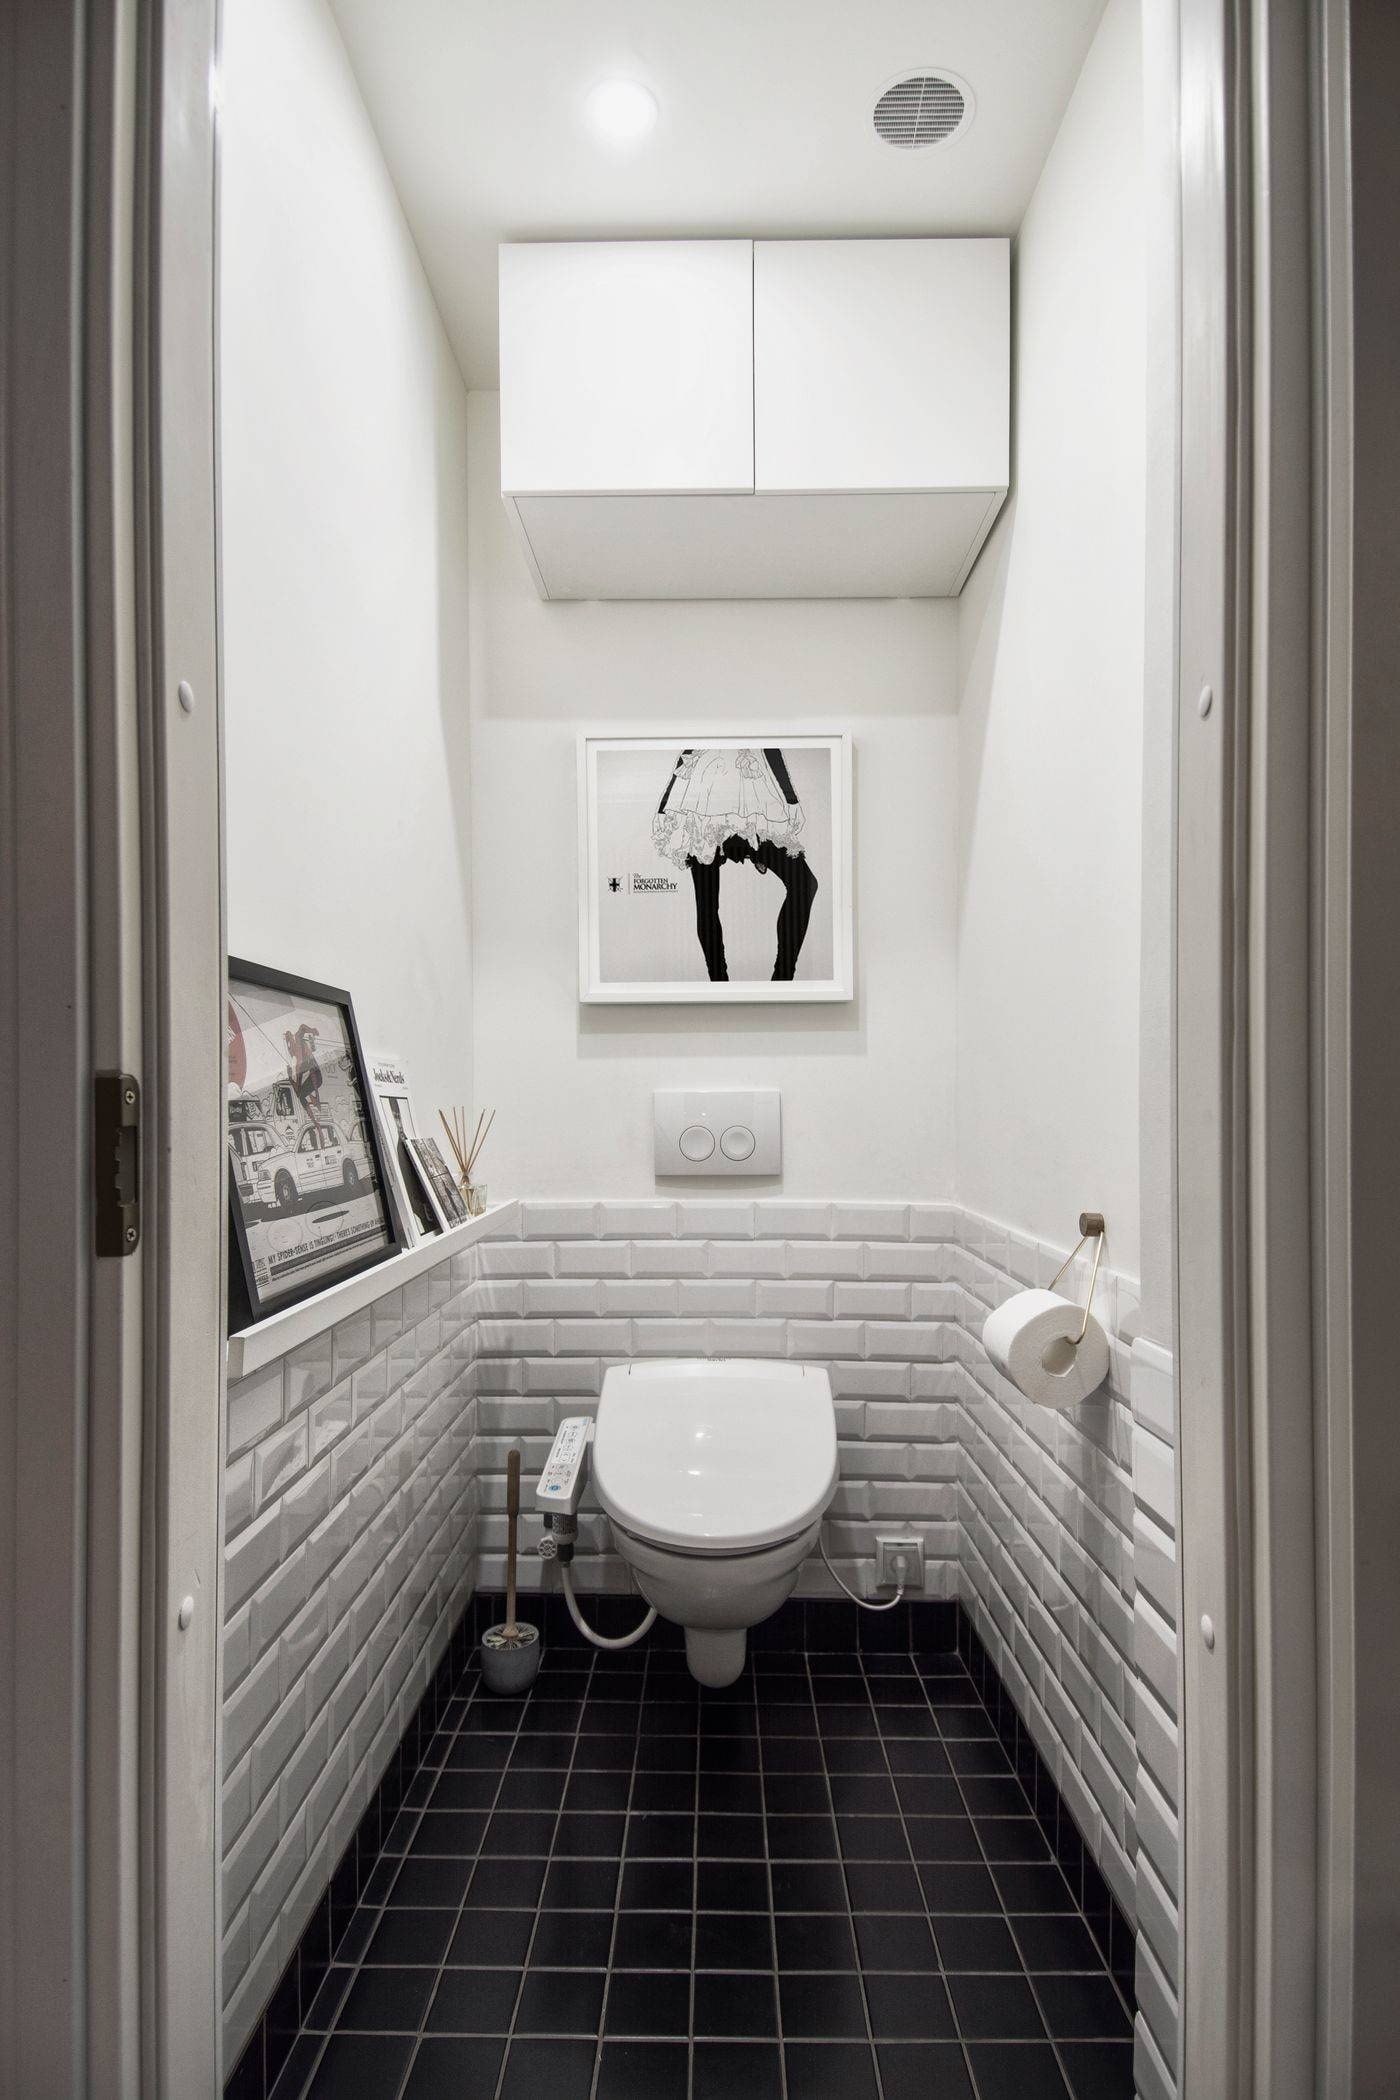 Ремонт туалета под ключ с материалами, фото и цены, отделка туалетной комнаты в квартире